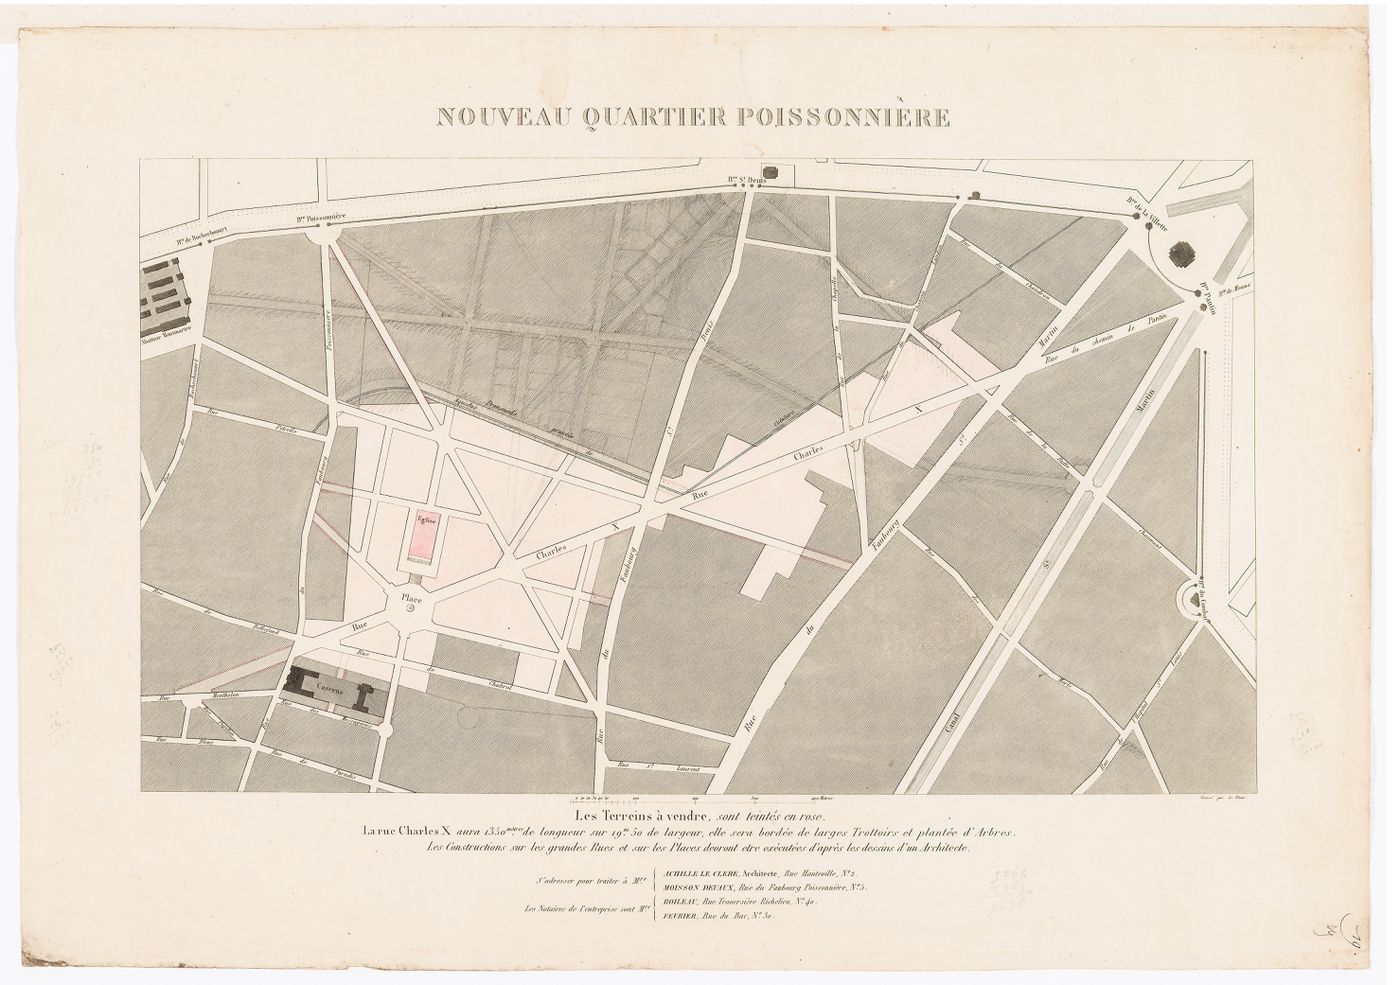 Site plan for the nouveau quartier Poissonnière showing the proposed rue Charles X